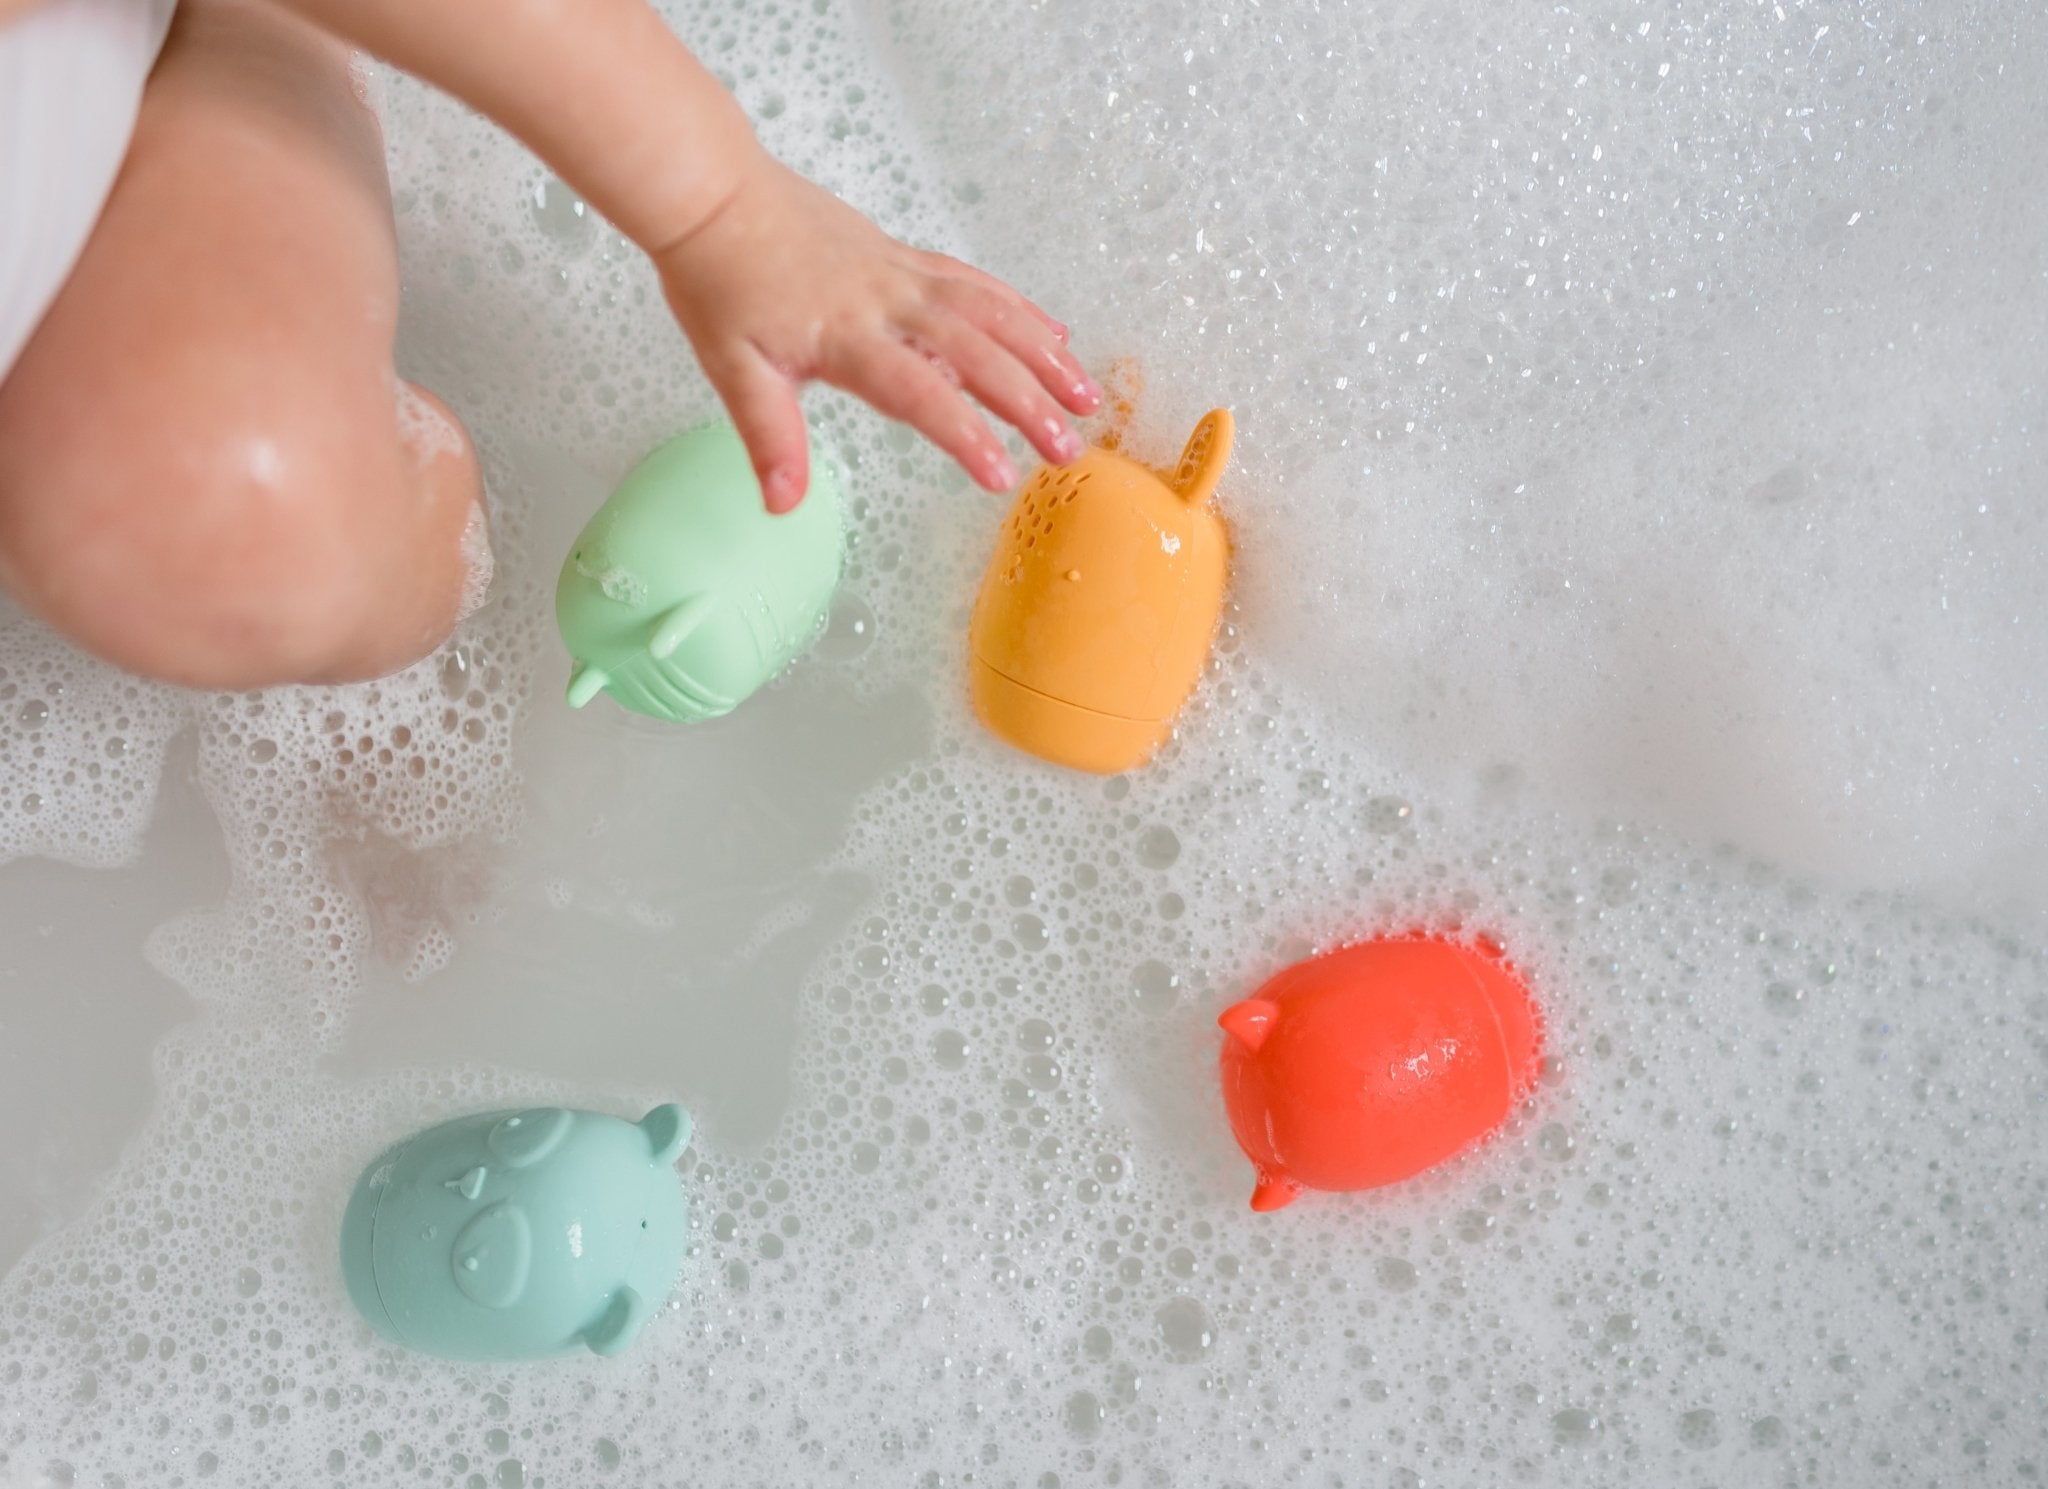 Bath Buddies, Toddler Bath Toys